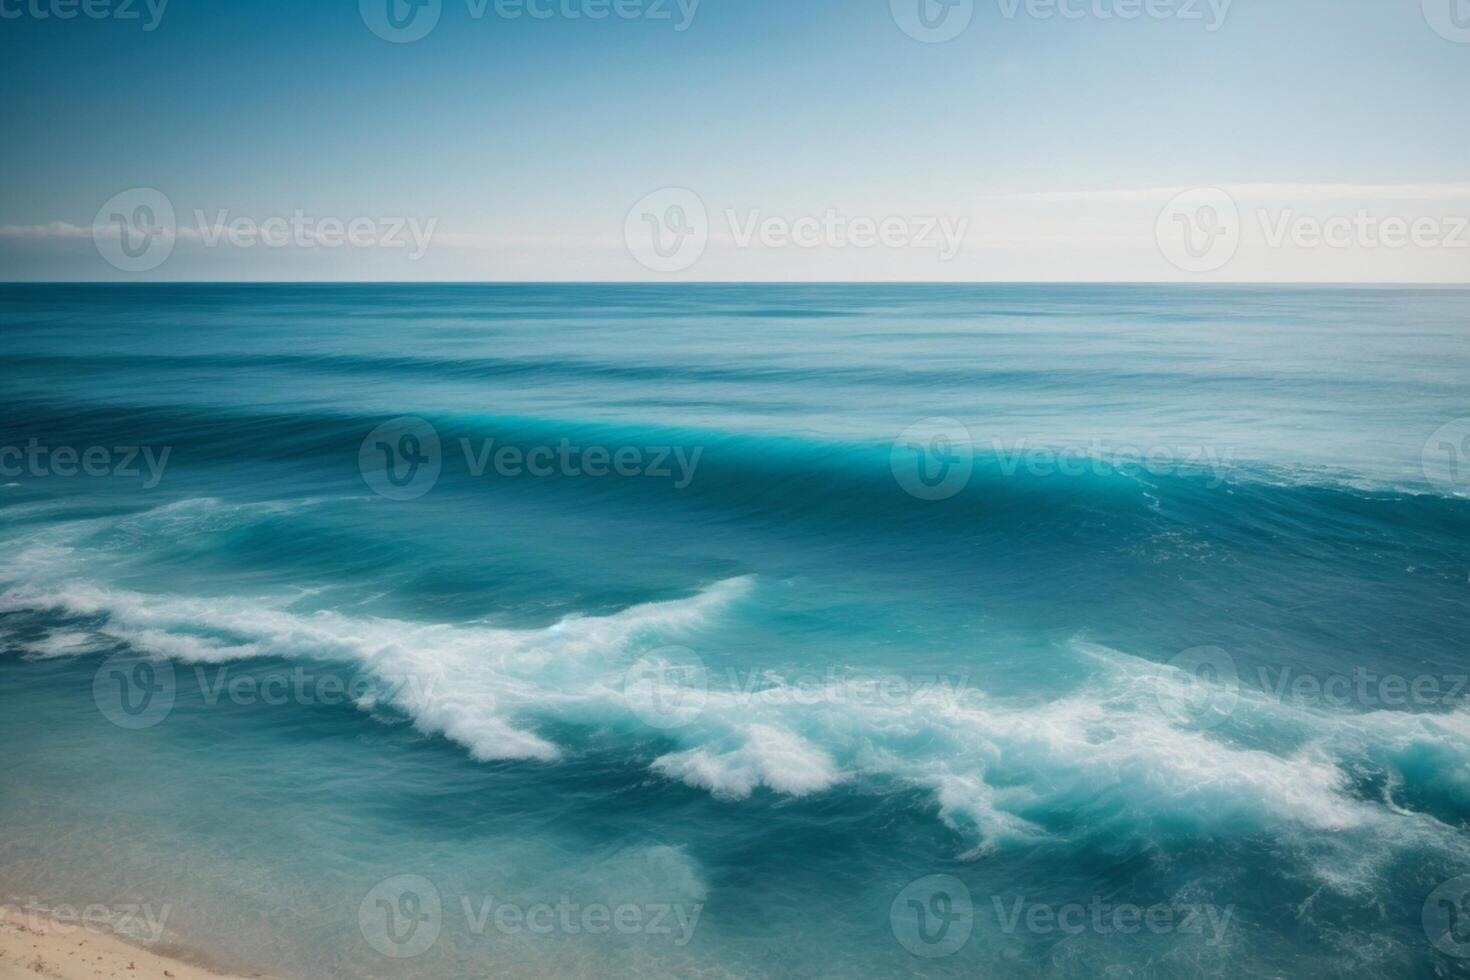 uma lindo de praia com ondas e azul céu foto